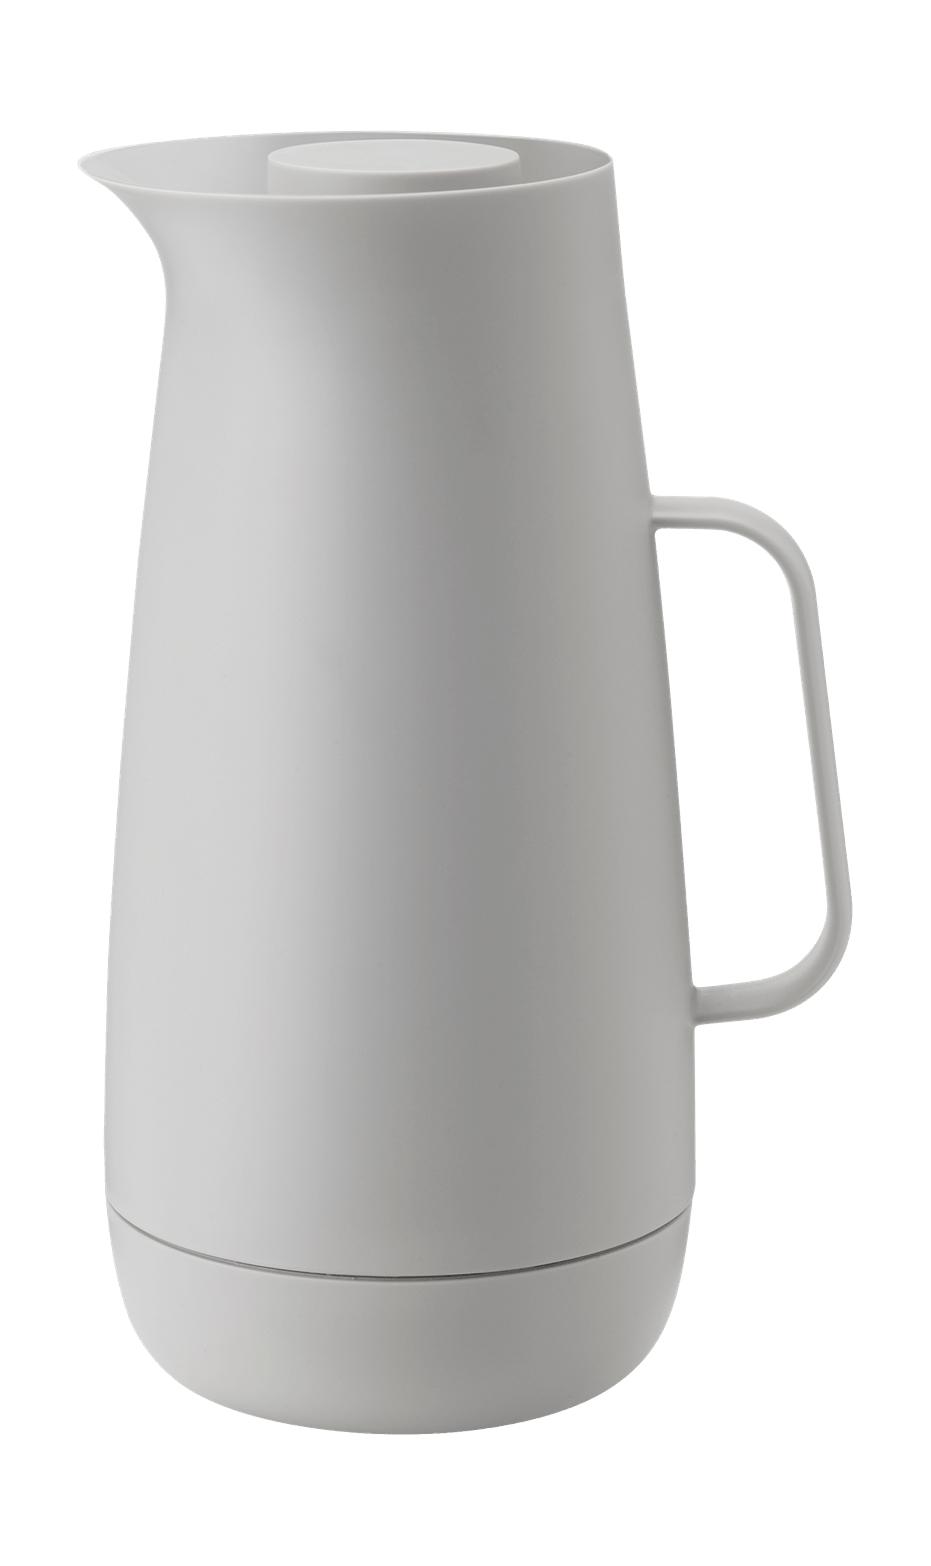 Stelton Norman Foster Vacuum džbán 1 L, světle šedá